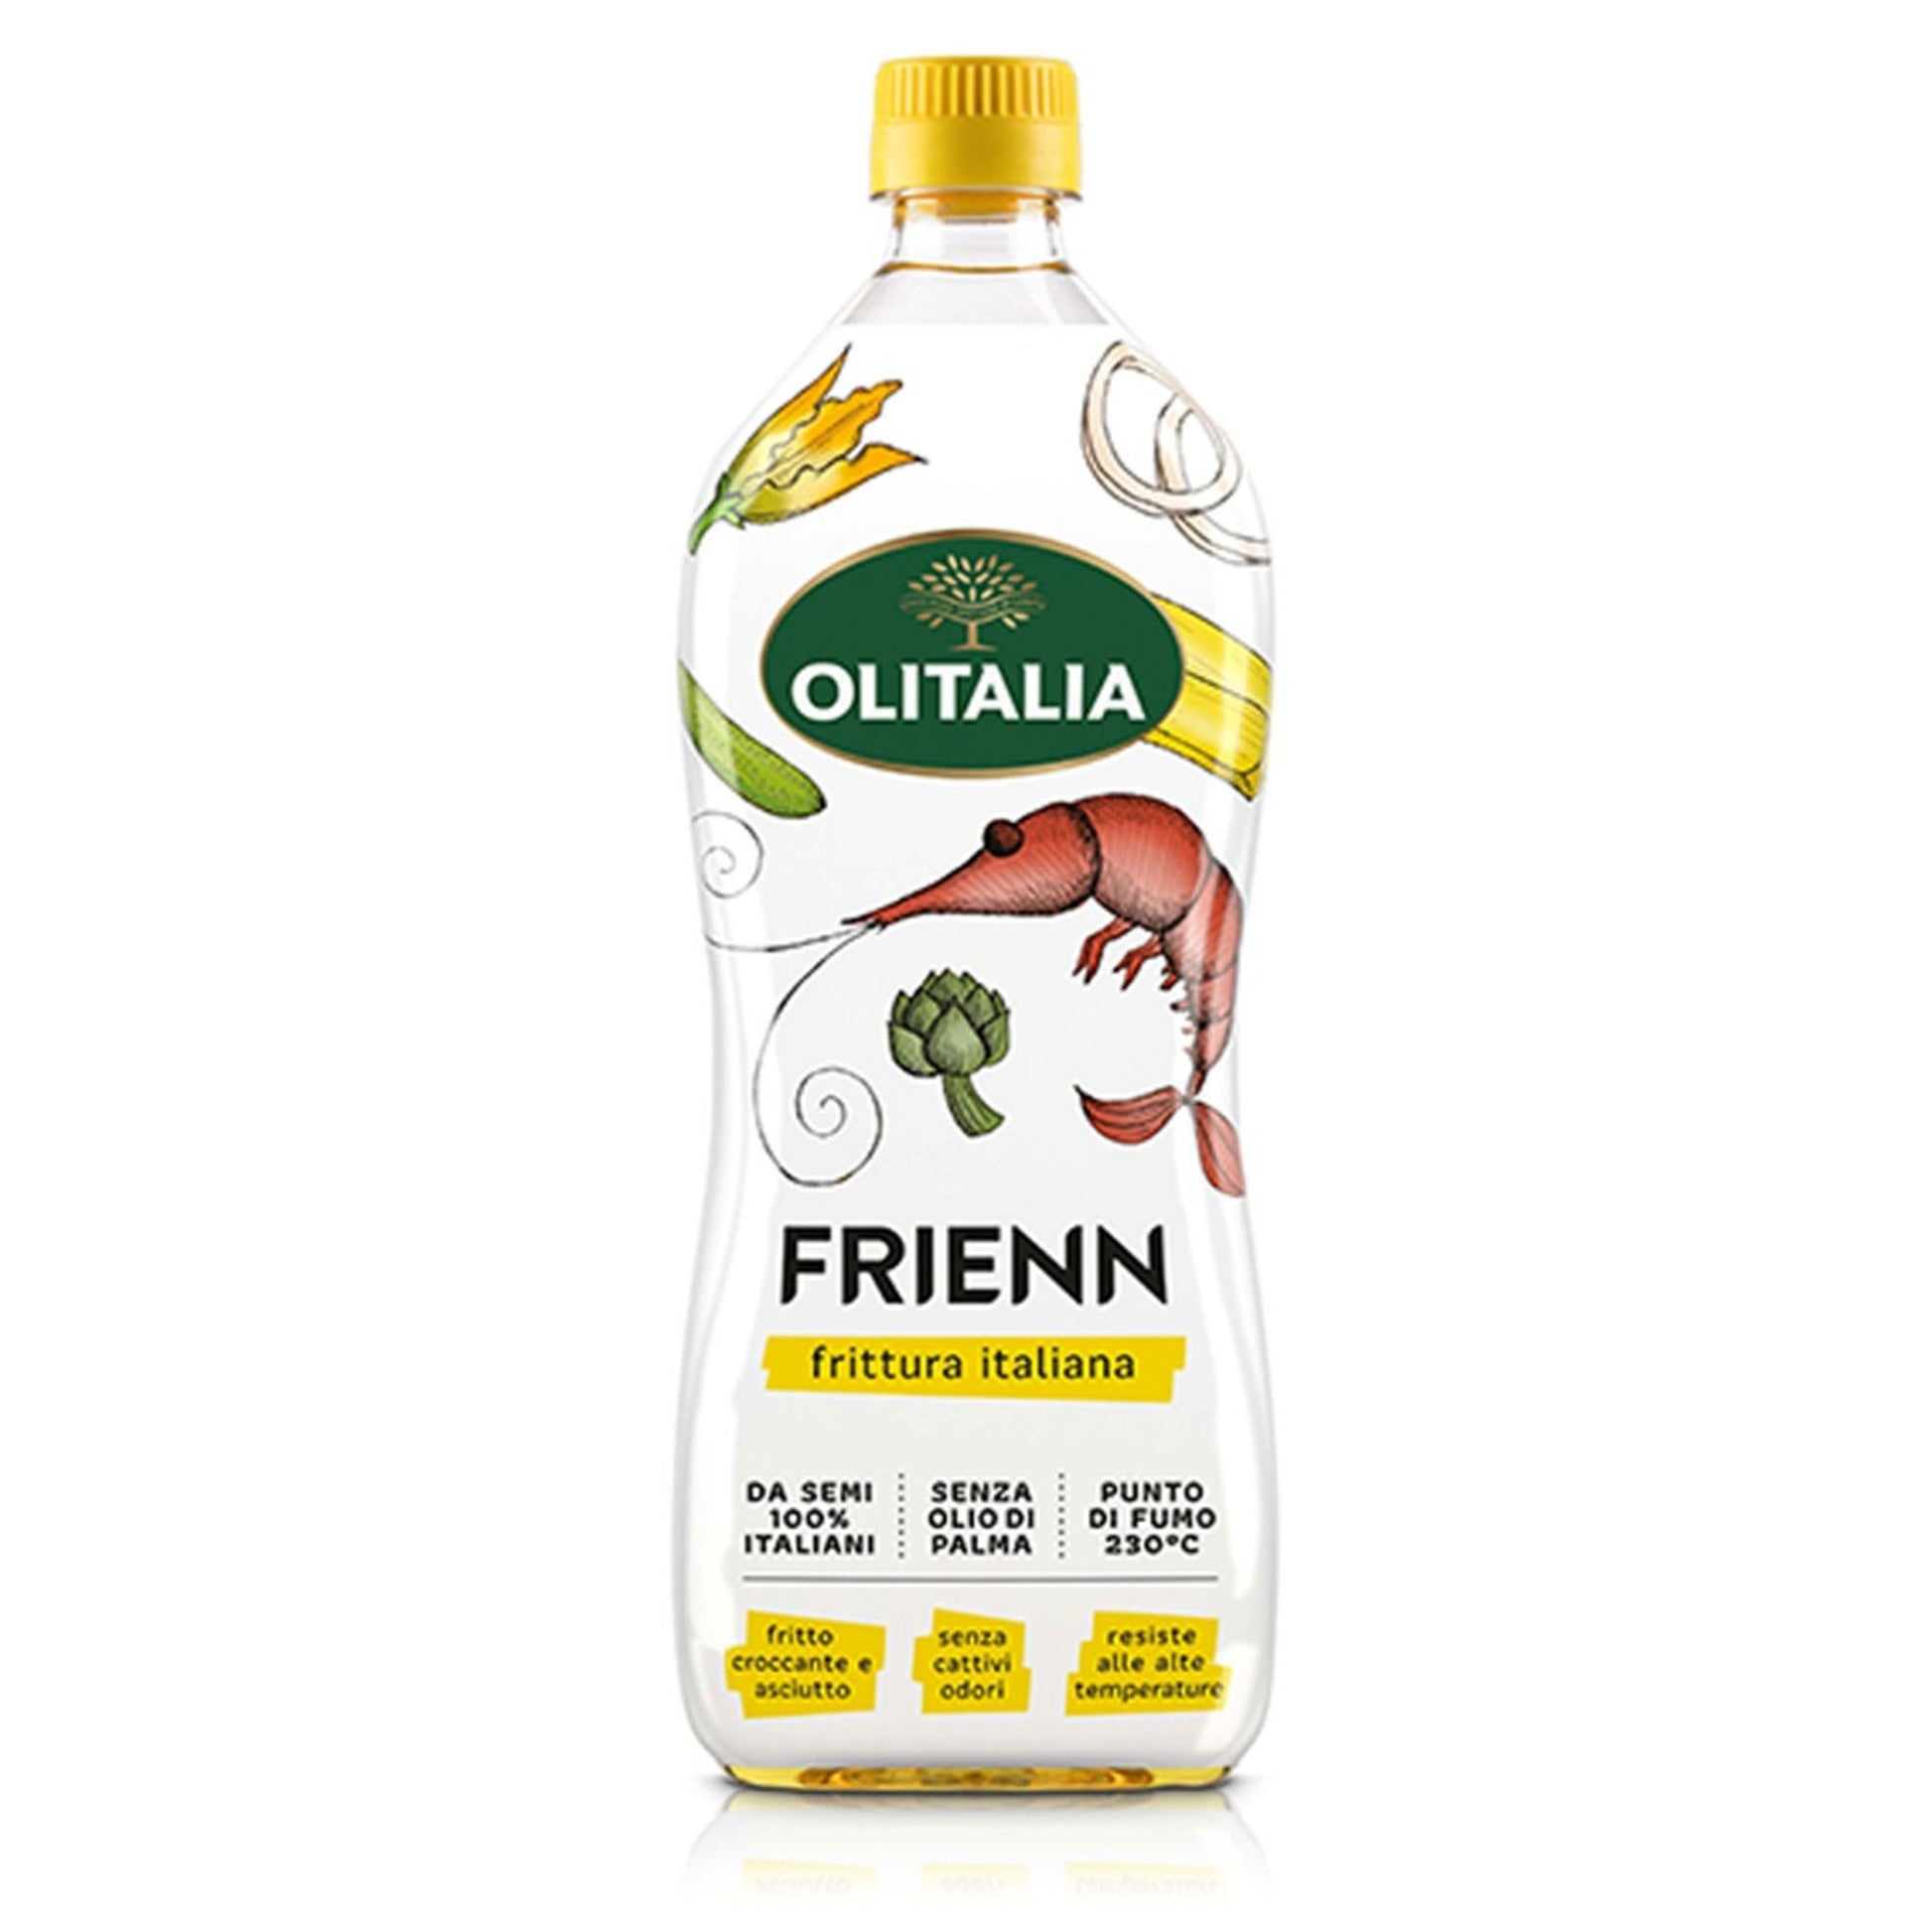 Olitalia Oil Frienn 1L